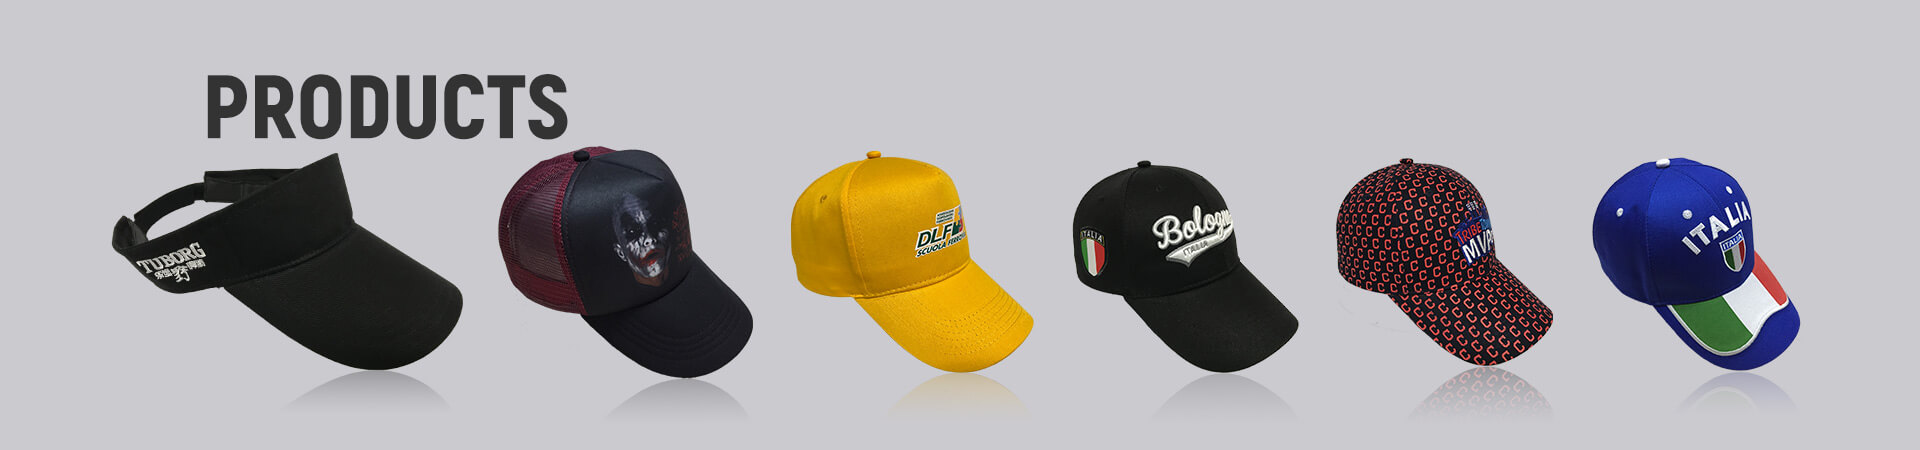 Sombrero de copa Archives - Gorra de béisbol, gorra deportiva, gorra de golf, gorra de pescador, gorra de camionero